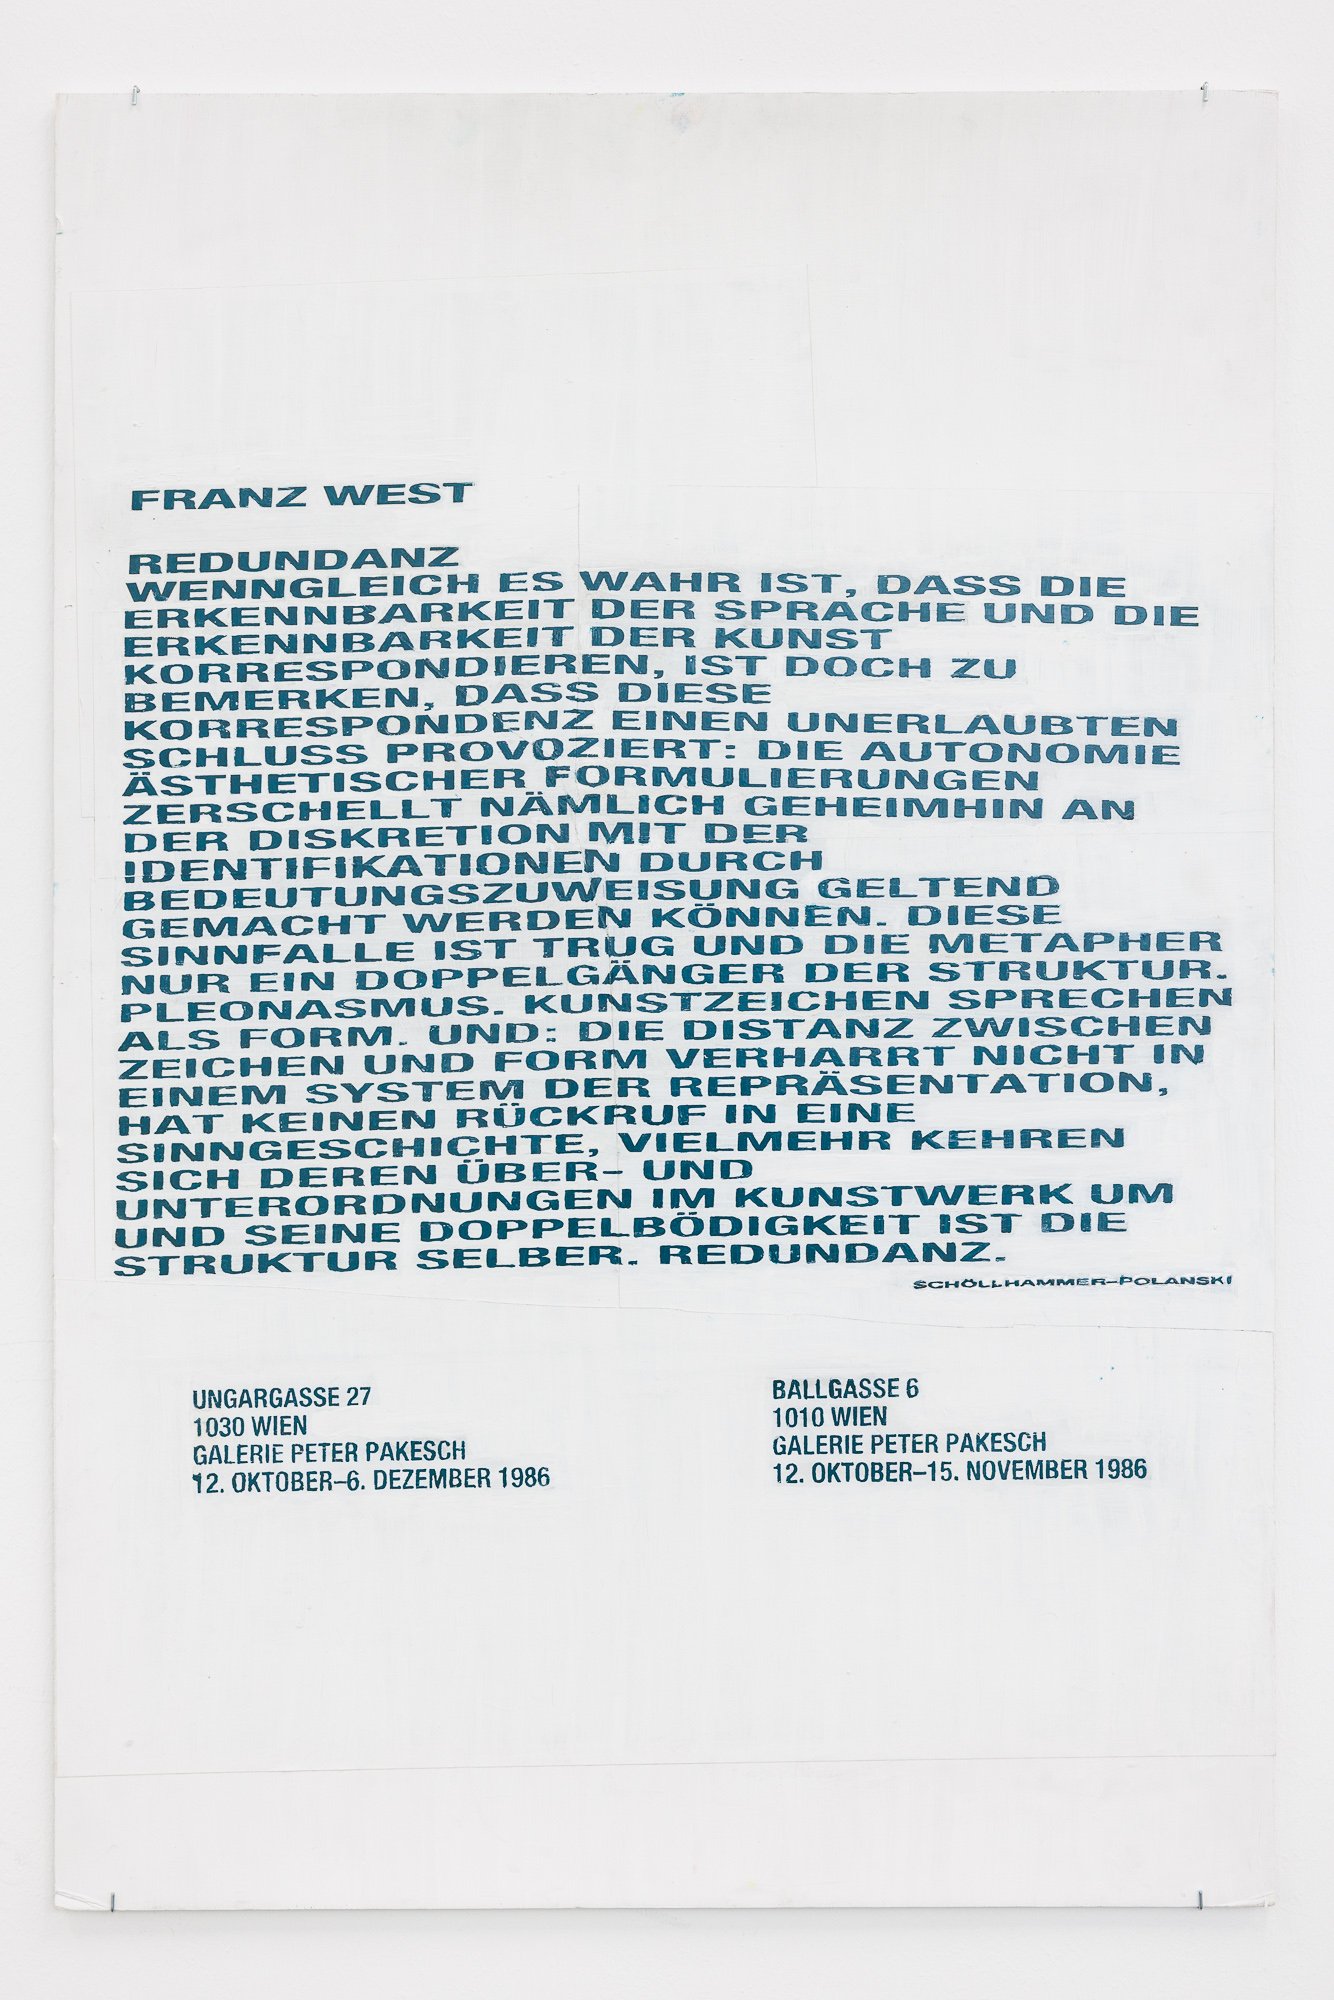 Franz WestPlakatentwurf (Franz West, Redundanz), 2000Collage, copy, colour on foam board 101.5 x 68 cmCourtesy Franz West Privatstiftung © Archiv Franz West / Estate Franz West